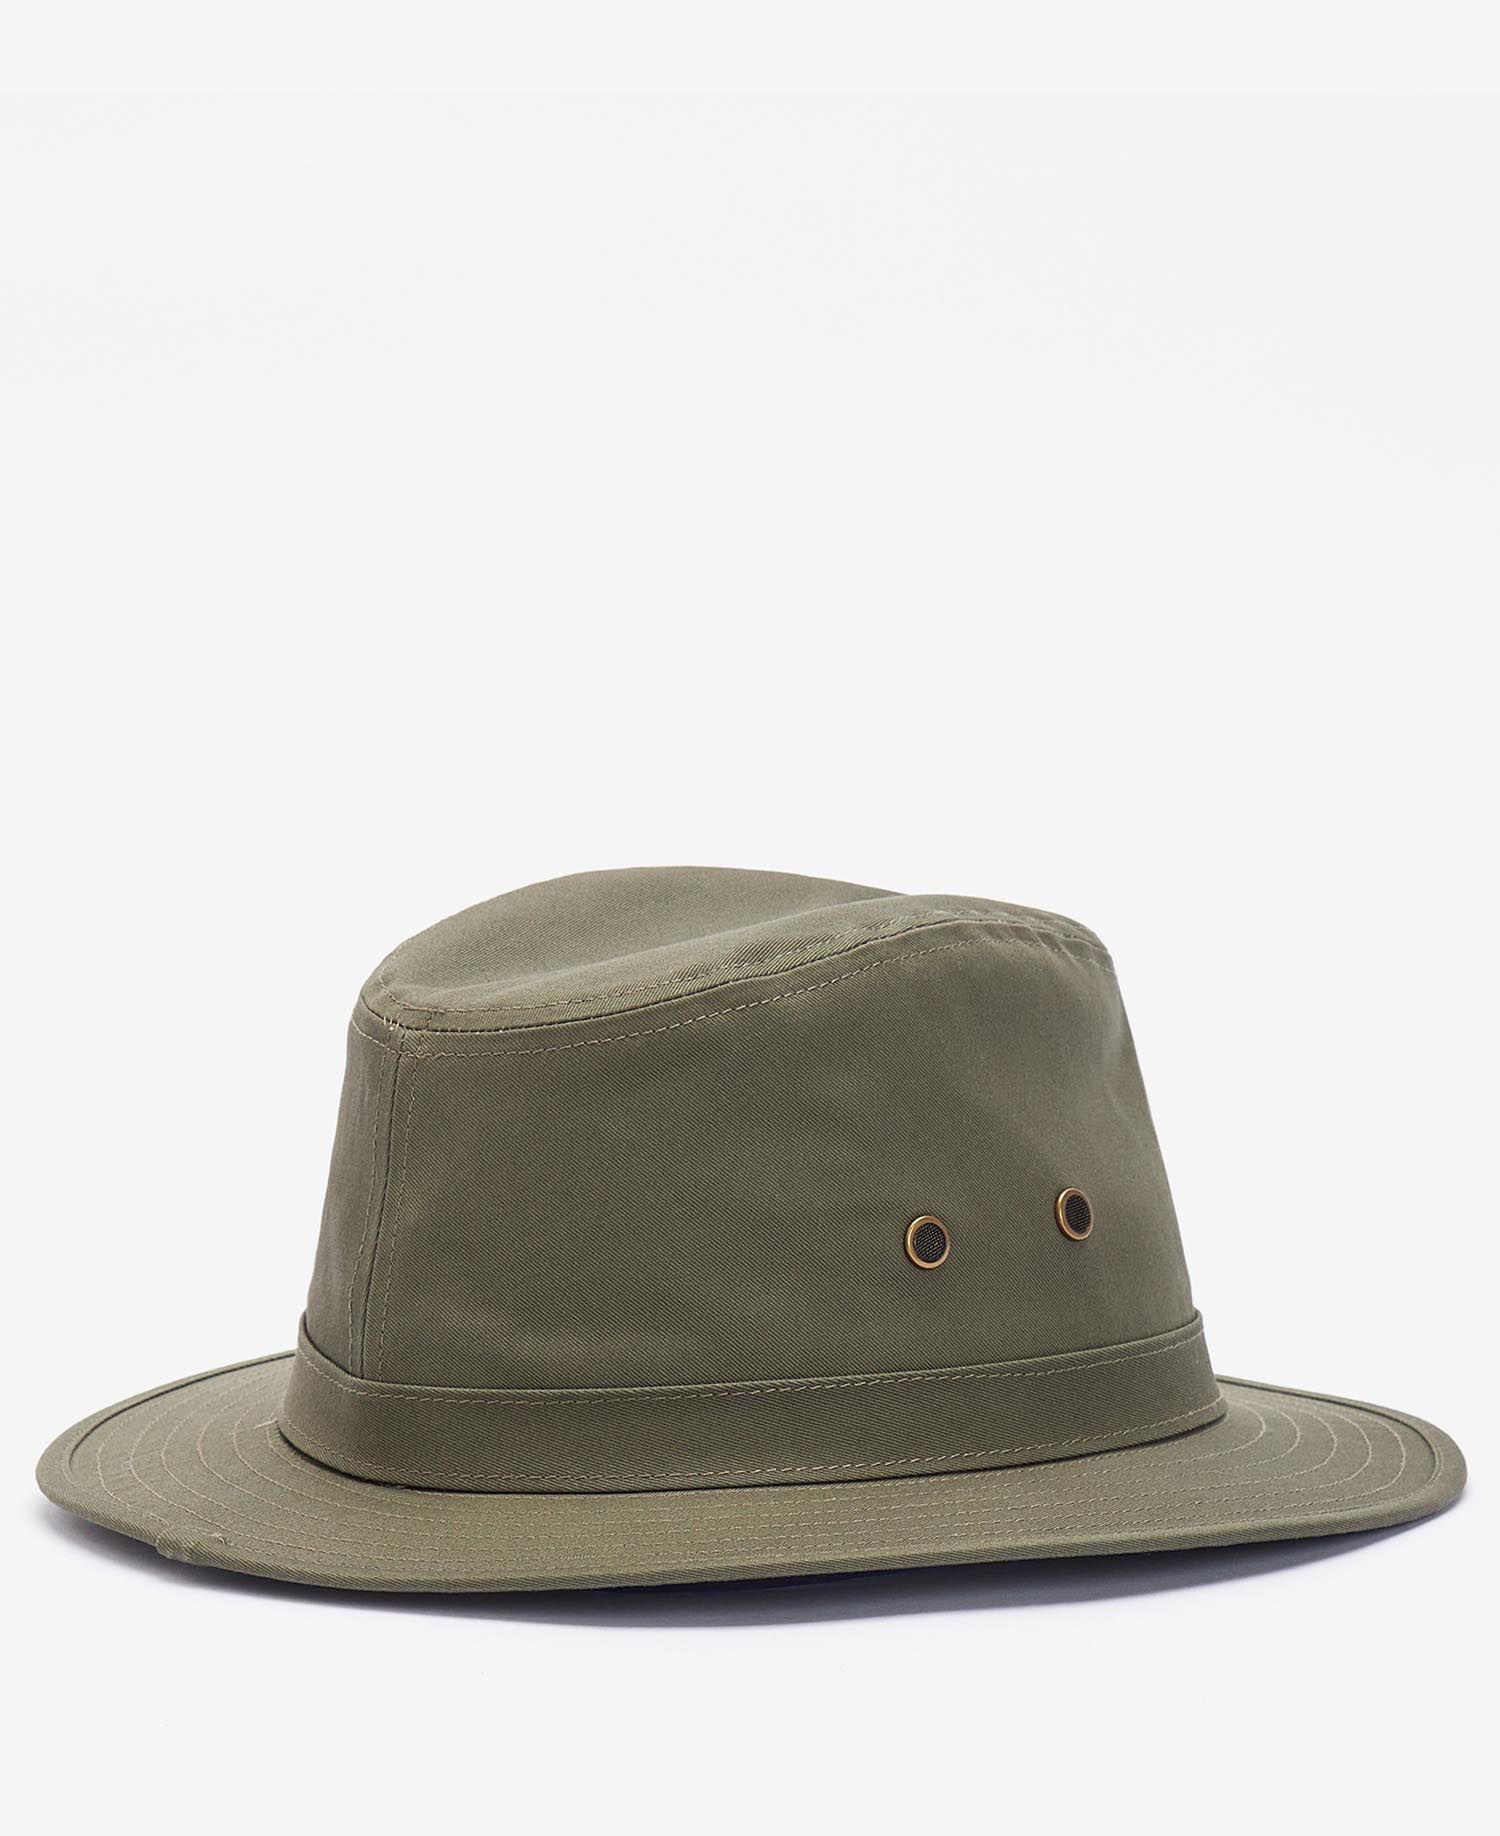 Rainproof Green Wax Downton Style Hat, Waterproof Rain Hat, Olive